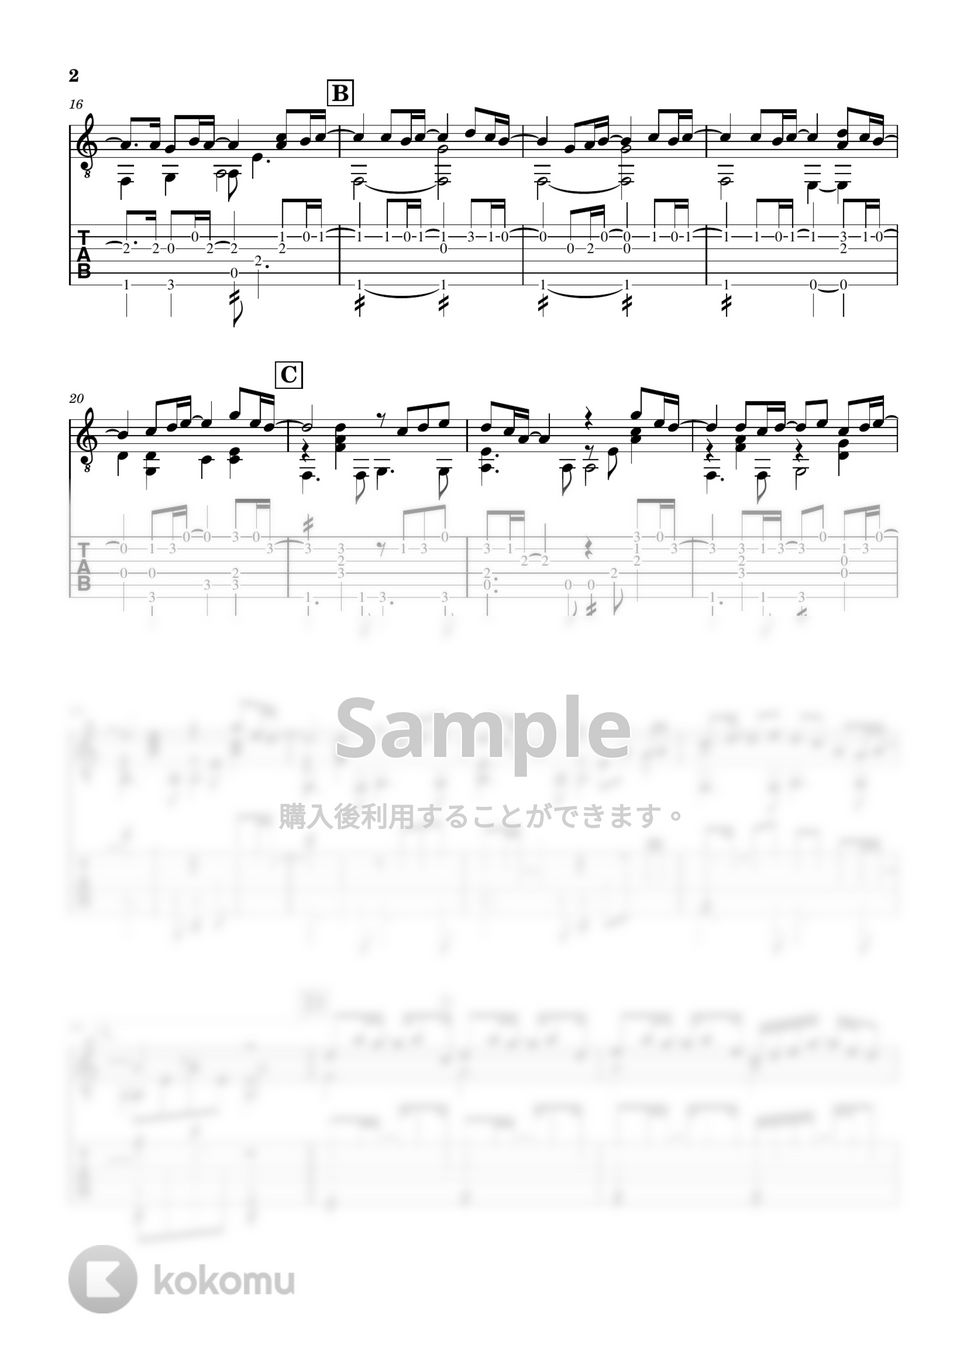 松任谷由実 - 春よ、来い (ギター・ソロ用) by ギタースコア